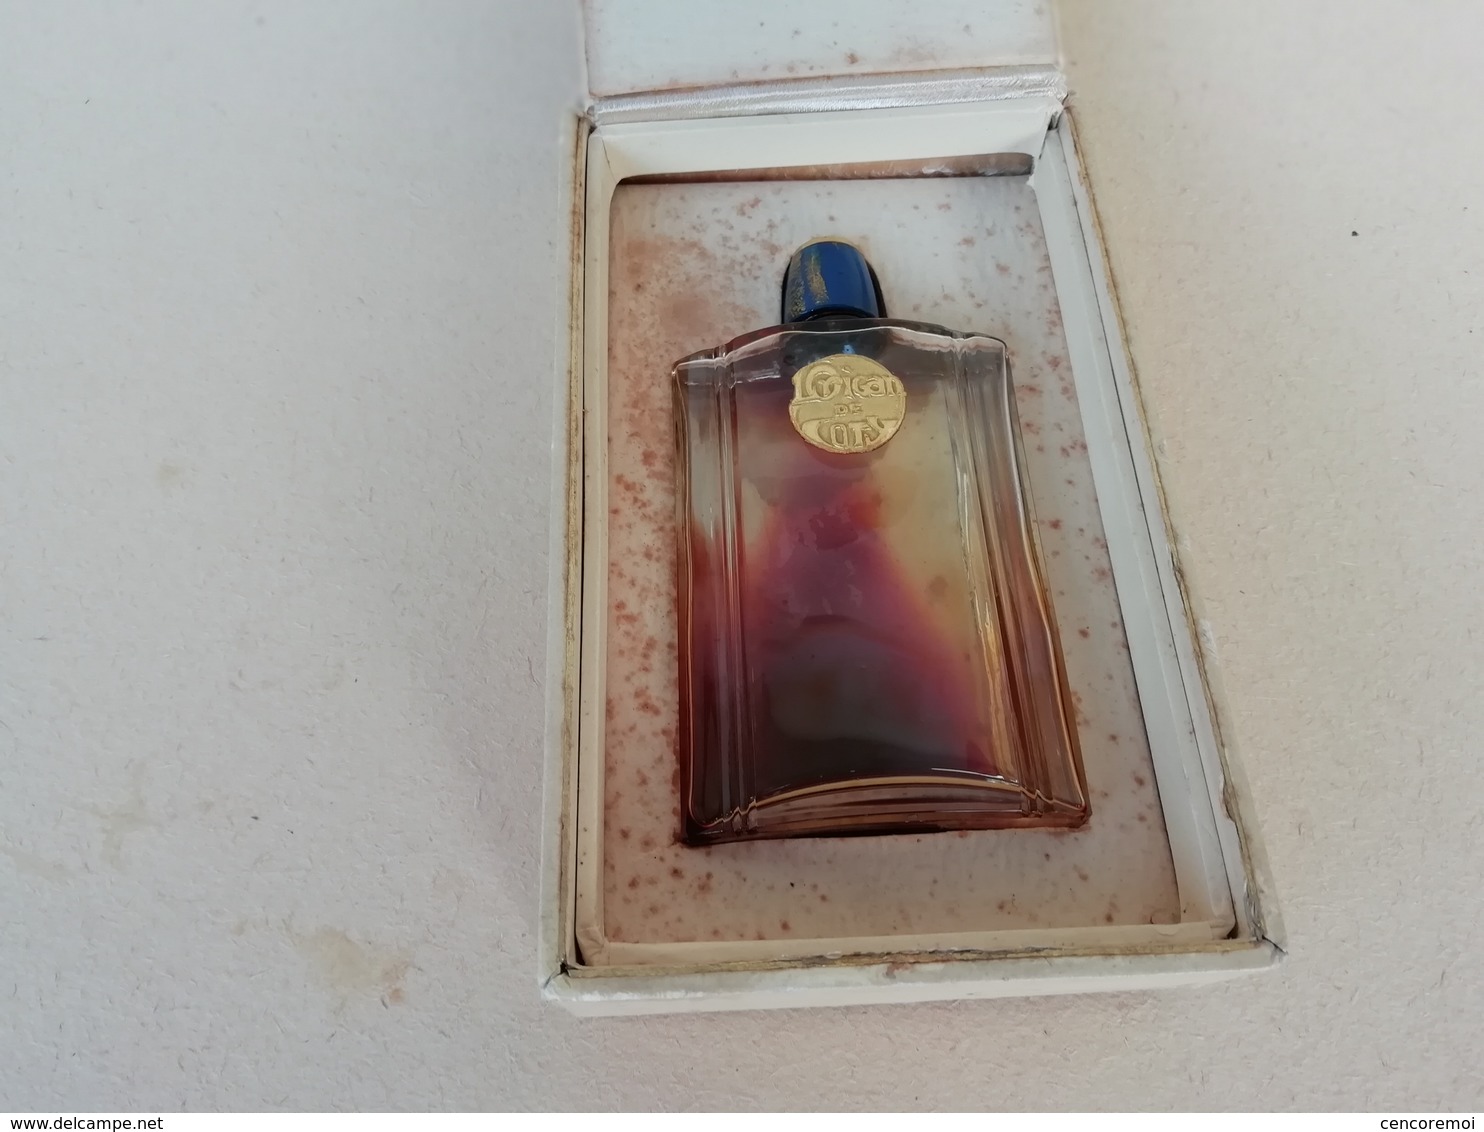 ancien flacon à parfum de collection parfumerie Coty, l'Origan dans sa boite d'origine